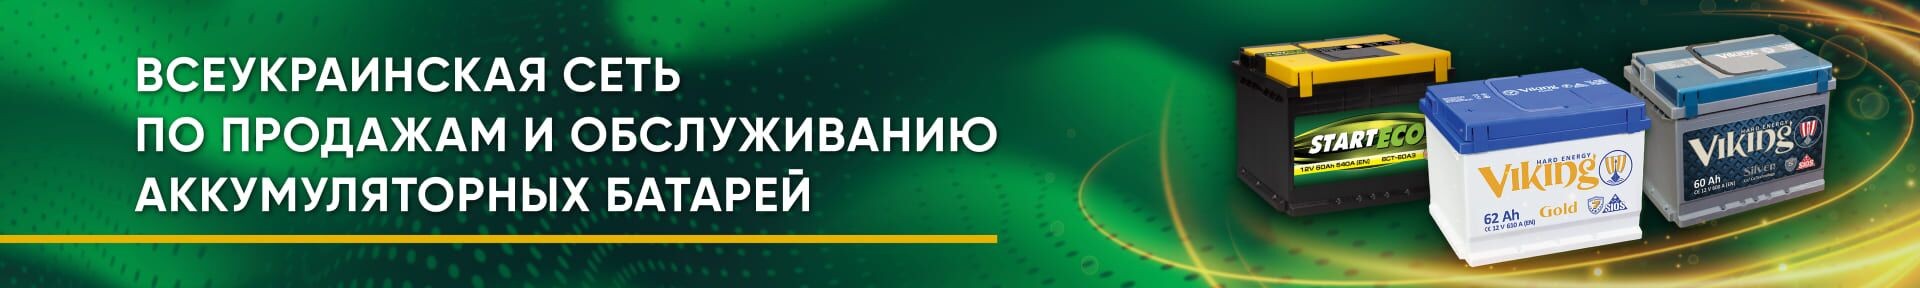 Всеукраинская сеть по продажам и обслуживанию аккумуляторных батарей